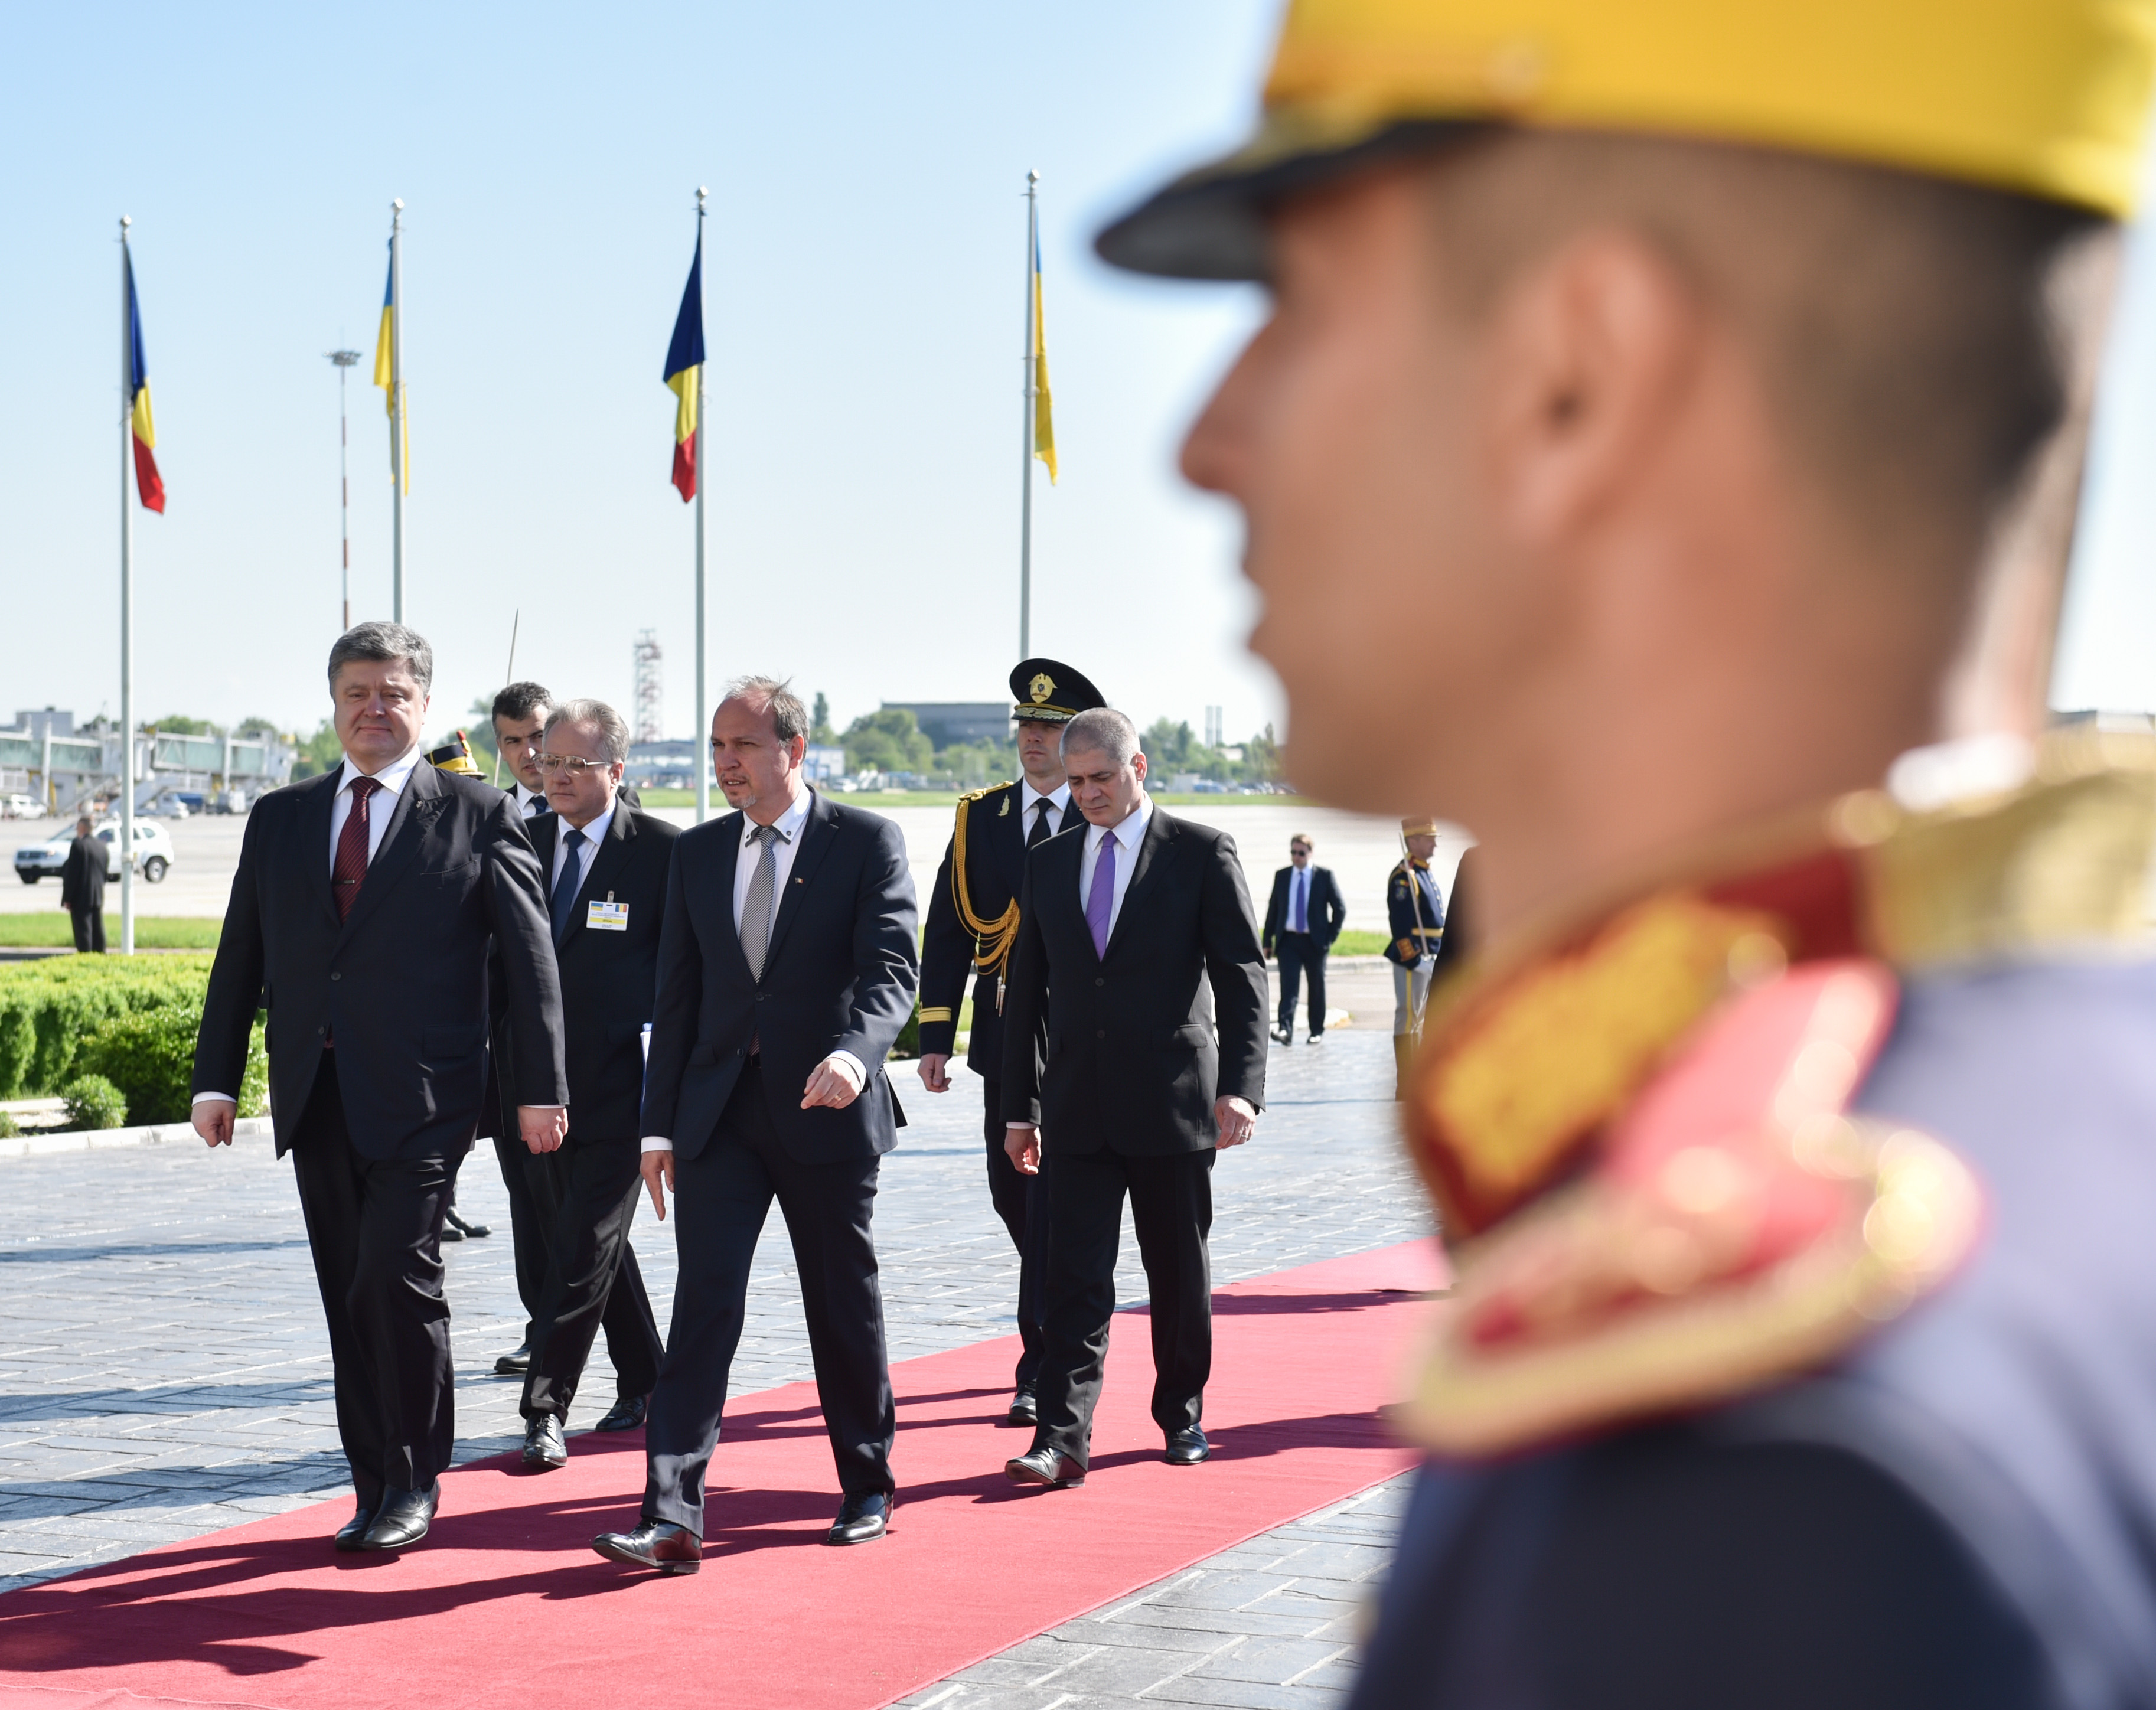 Стартовал первый официальный визит Петра Порошенко в Румынию - пресс-служба Президента Украины 